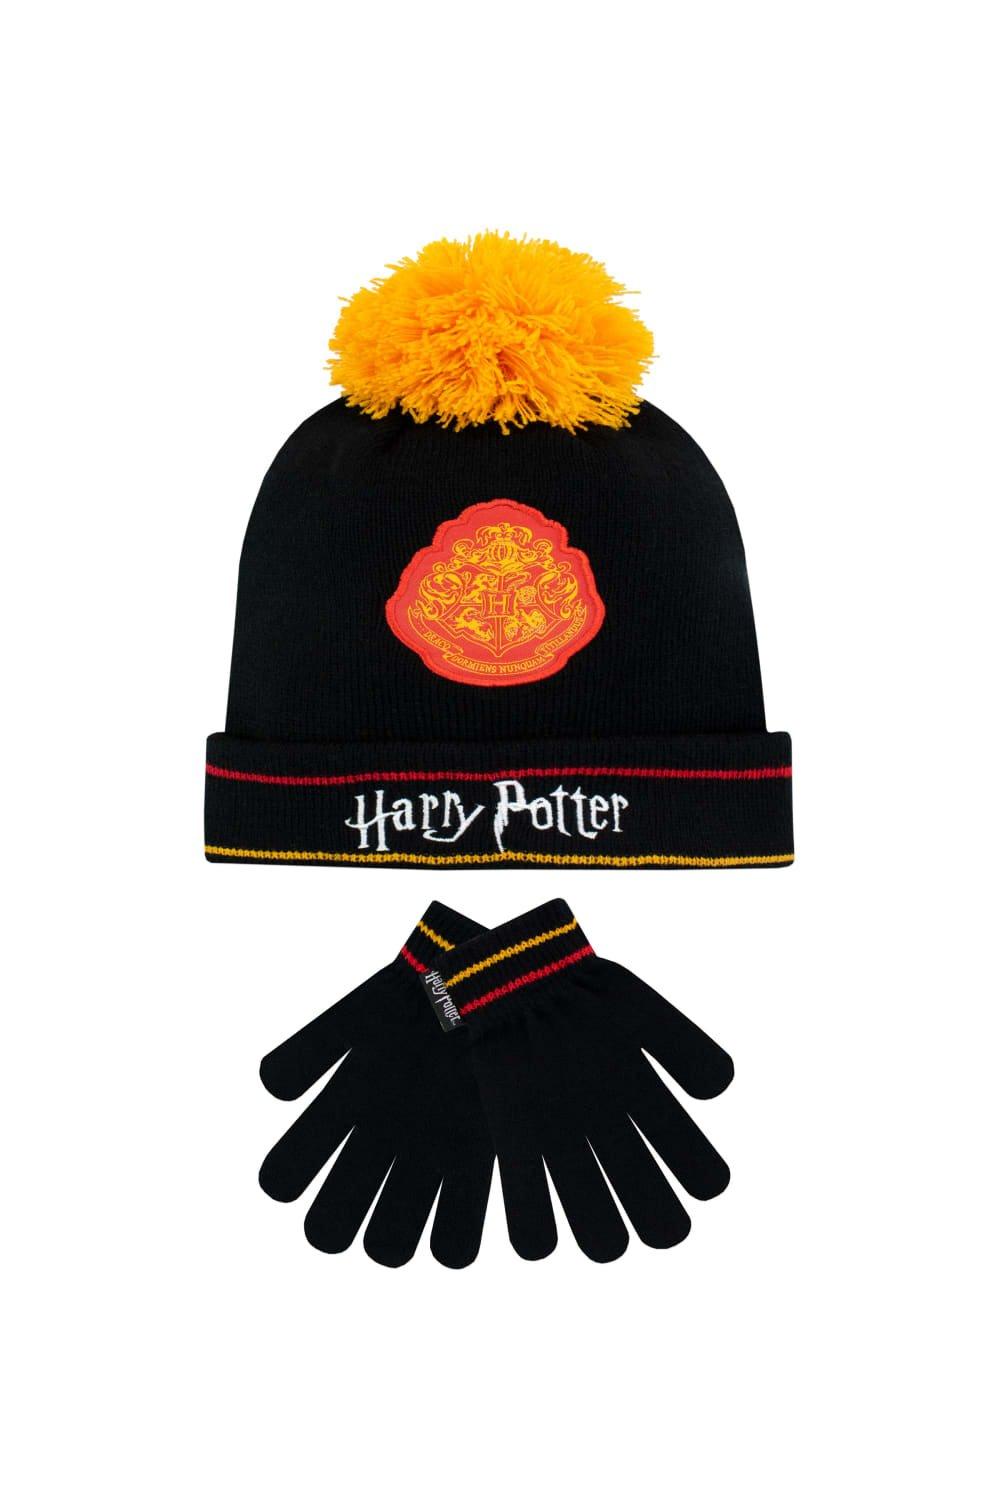 Комплект зимней шапки и перчаток Harry Potter, черный шапка шарф комплект с помпоном мультяшная детская зимняя шапка для мальчиков и девочек детская теплая трикотажная детская шапка